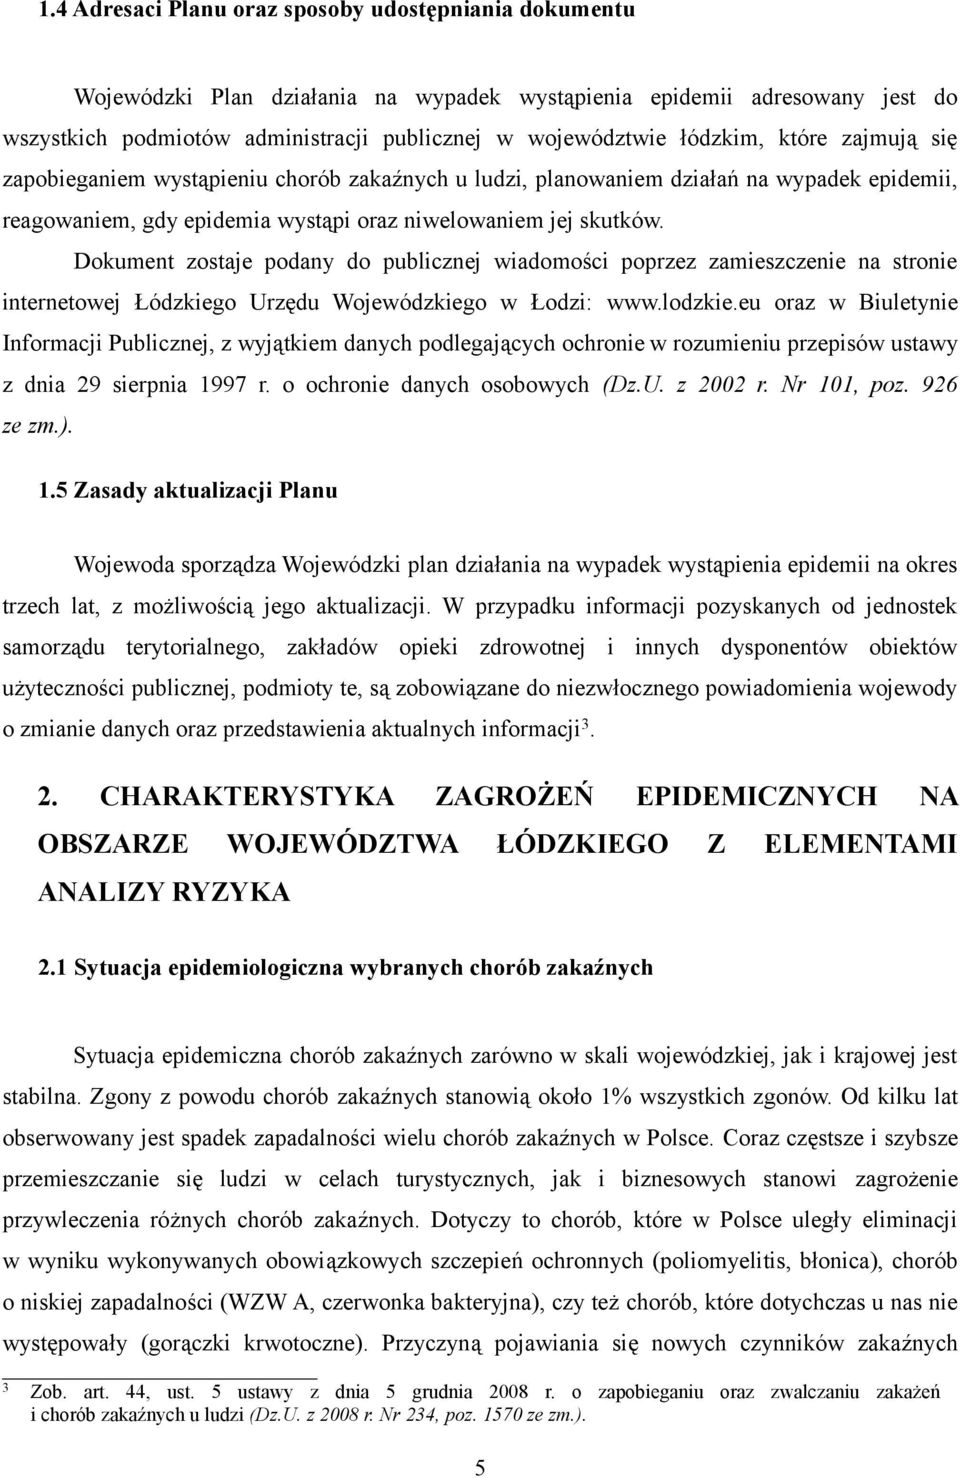 Dokument zostaje podany do publicznej wiadomości poprzez zamieszczenie na stronie internetowej Łódzkiego Urzędu Wojewódzkiego w Łodzi: www.lodzkie.